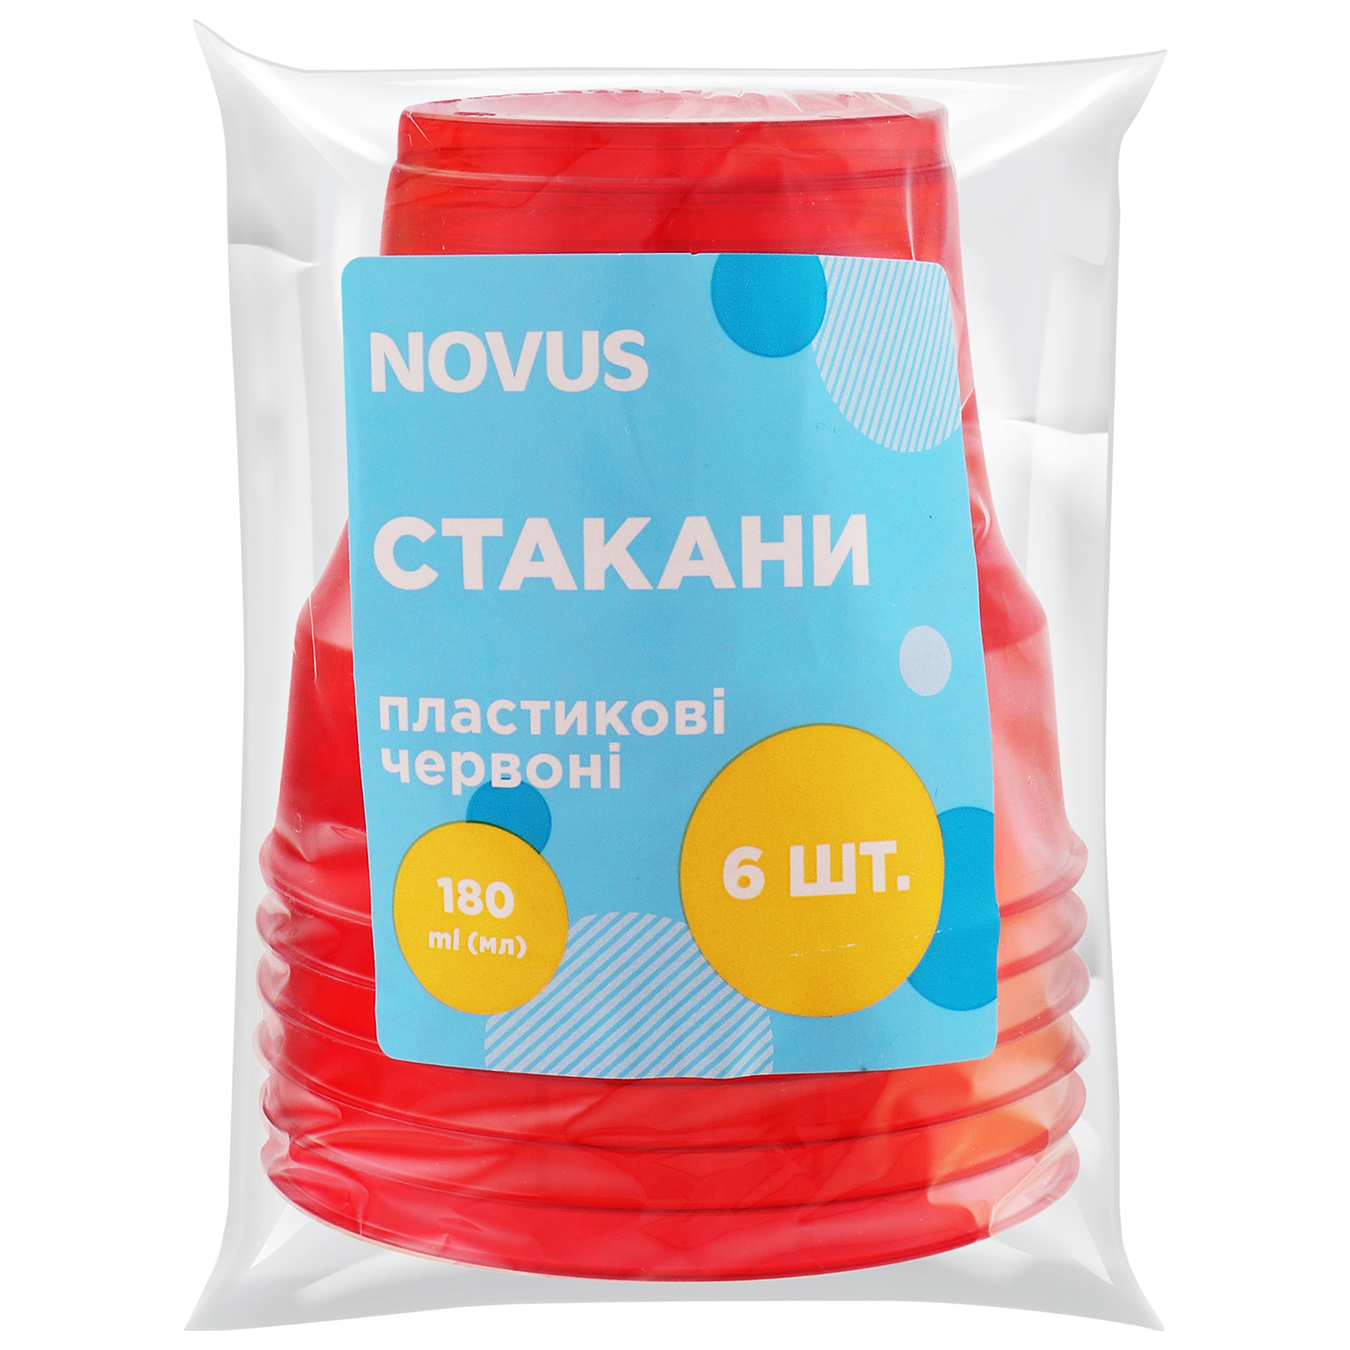 Стакан Novus пластиковий червоний 180мл 6шт